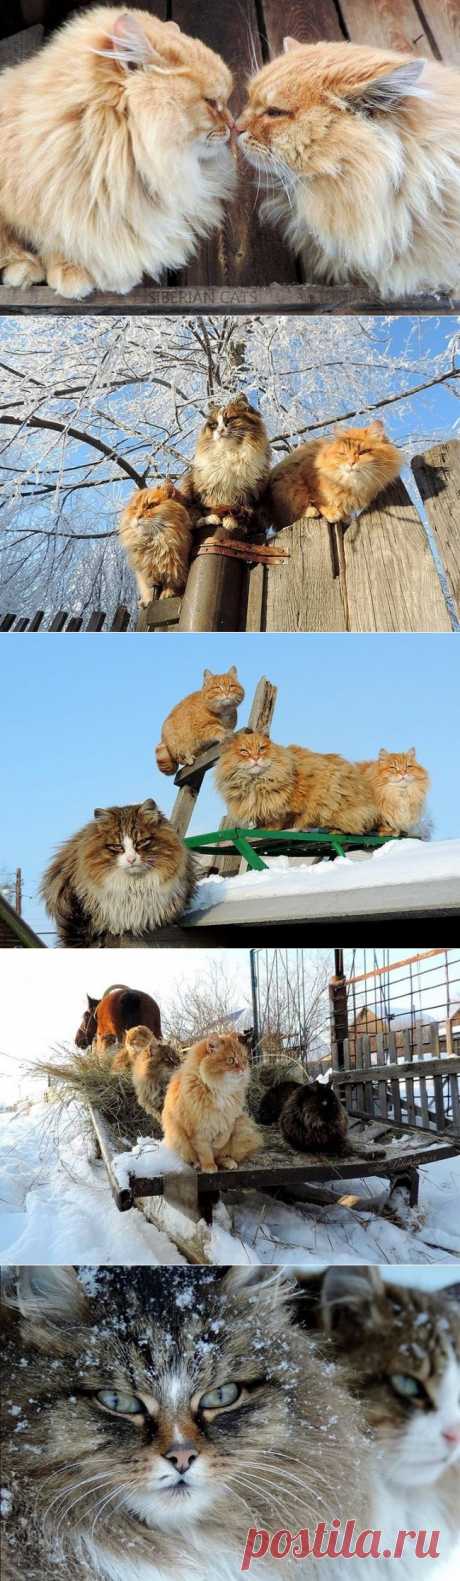 Суровые сибирские котики - Путешествуем вместе